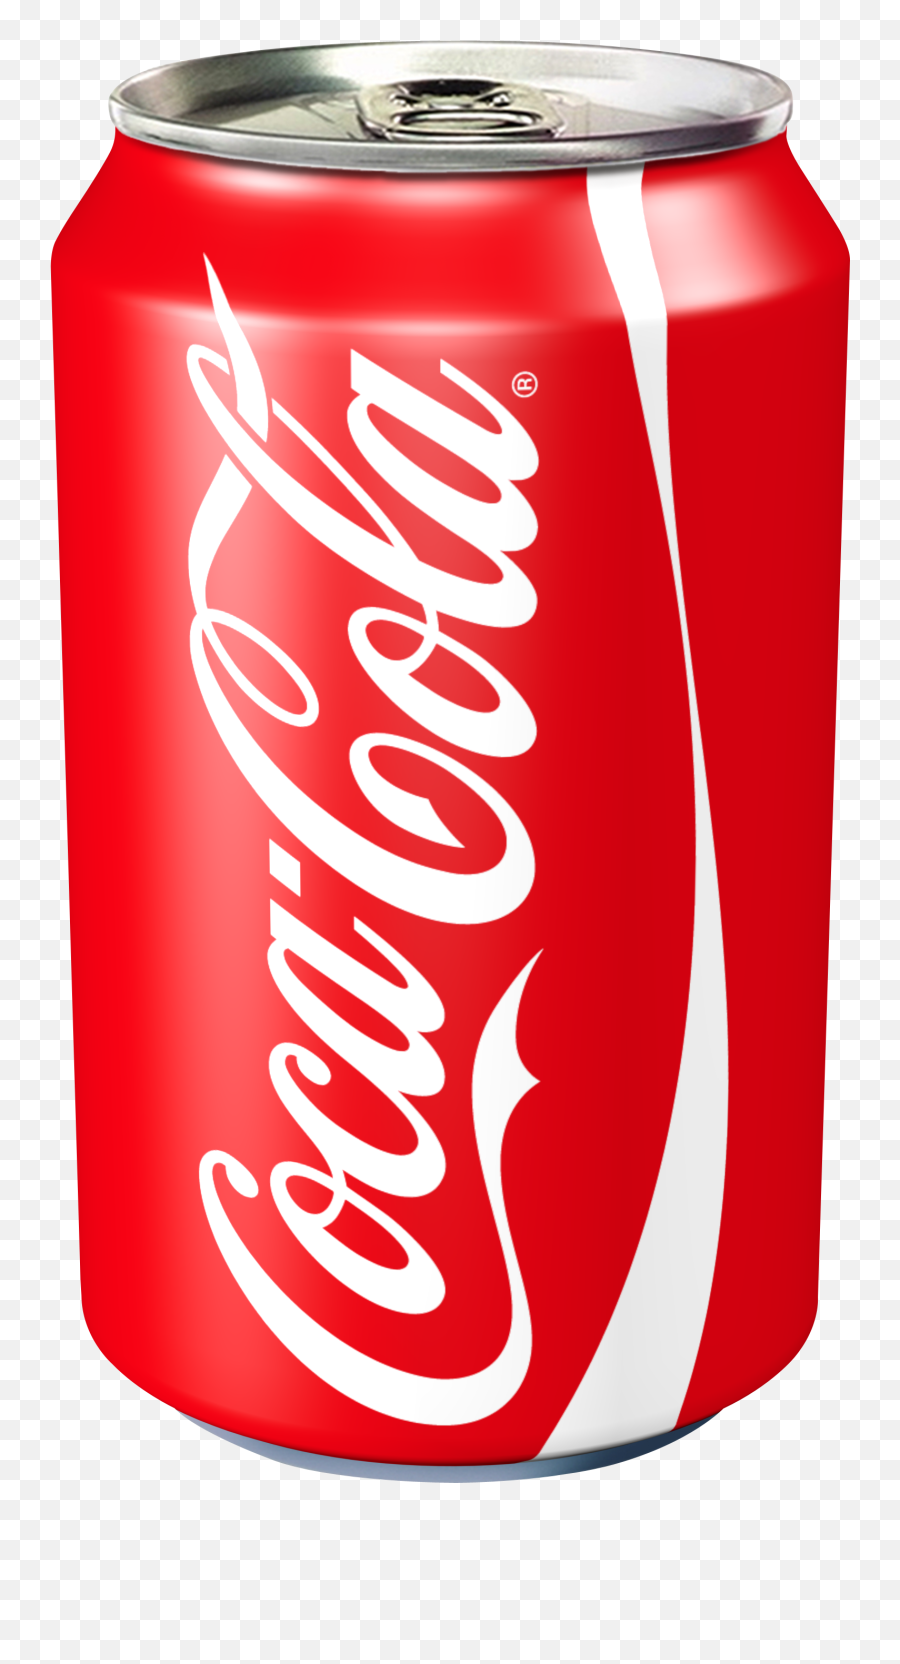 Coca Cola Can Transparent Image - Coca Cola Cans Emoji,Coca Cola Png